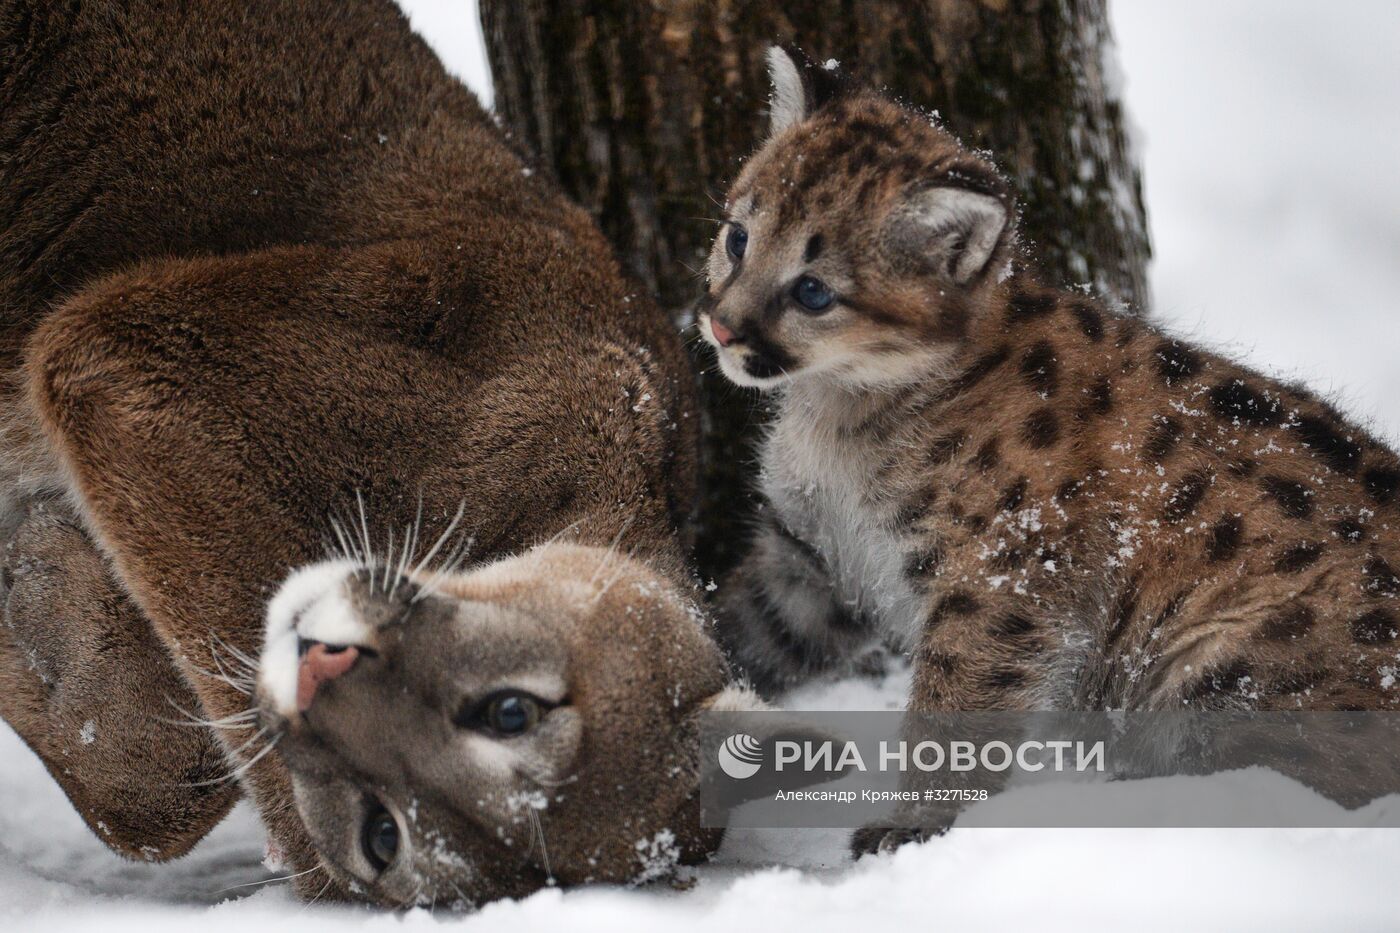 Детеныши пумы появились в Новосибирском зоопарке